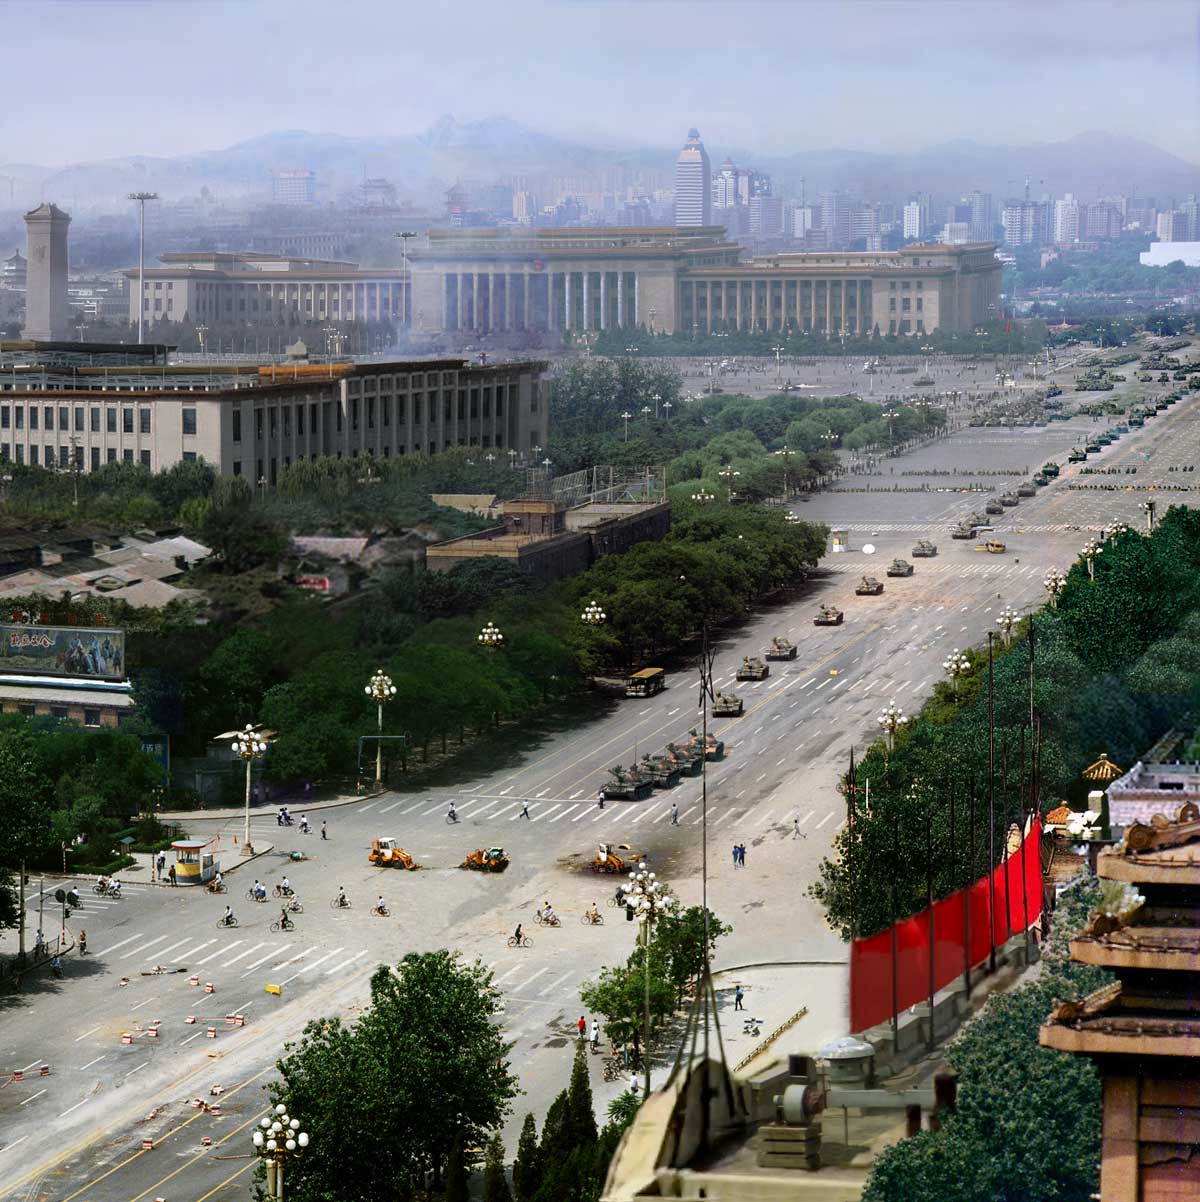 The Unknown Rebel, June 5th 1989 Tiananmen Square